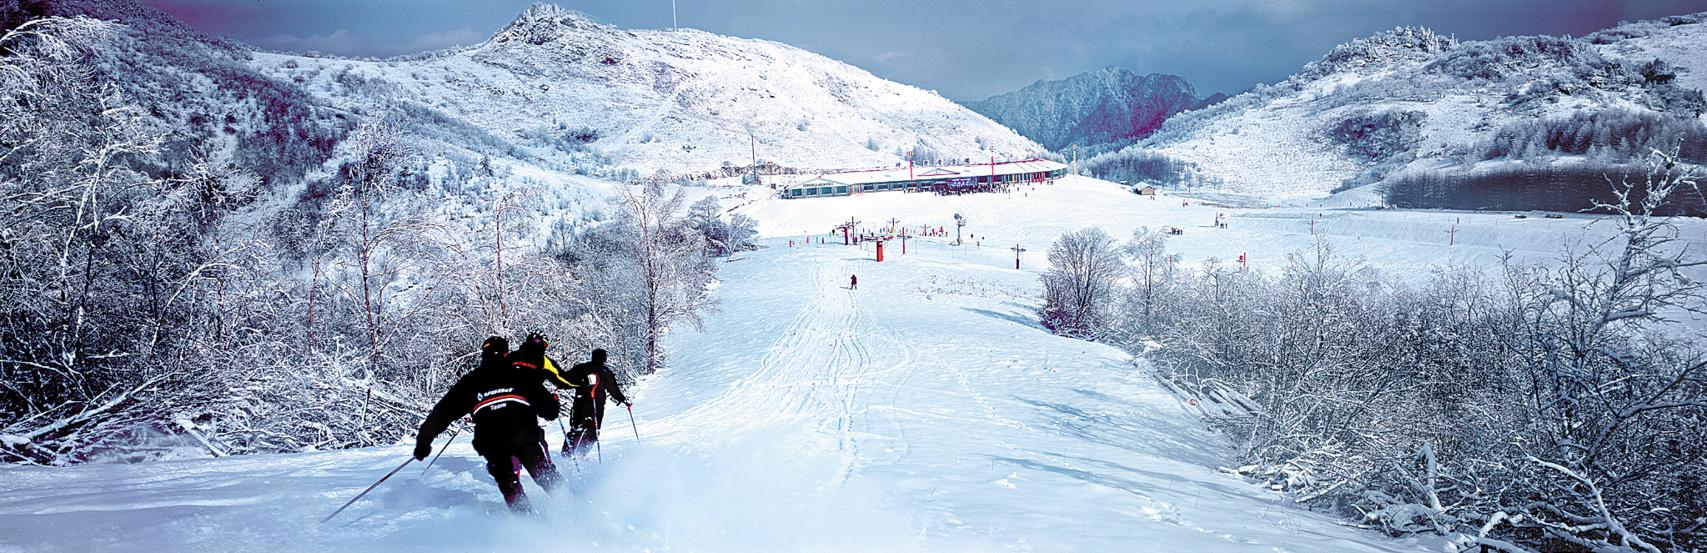 神农架中和国际滑雪场图片